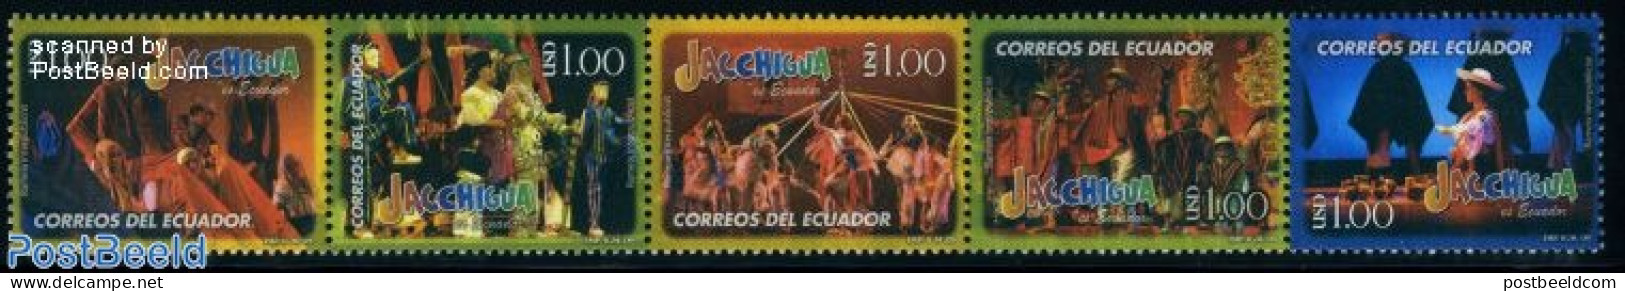 Ecuador 2009 Jacchigua Dance Group 5v [::::], Mint NH, Performance Art - Various - Dance & Ballet - Folklore - Baile